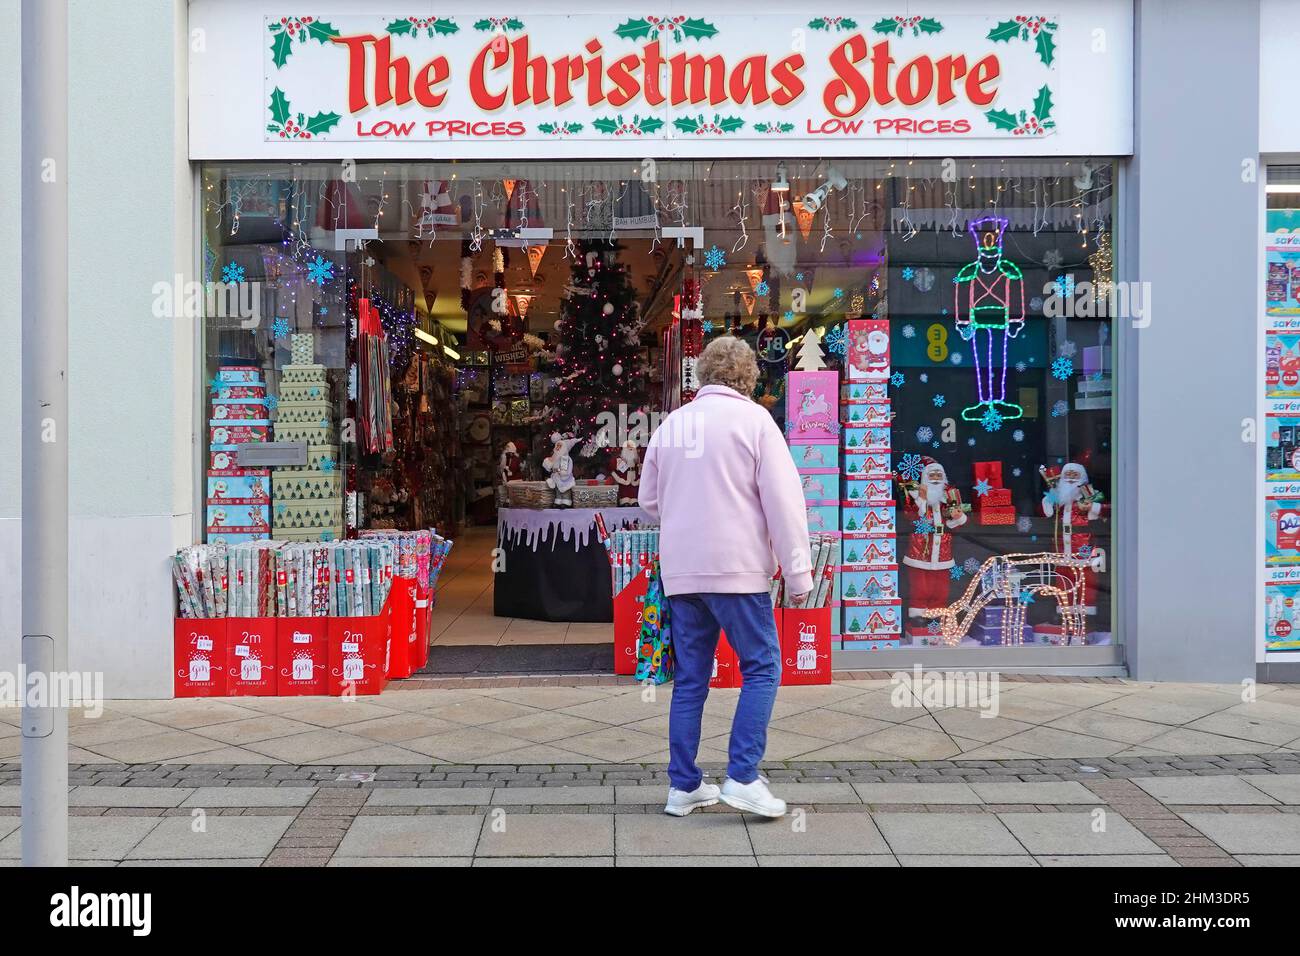 Les acheteurs à l'extérieur du magasin de Noël magasinent des articles de Noël exposés dans le centre commercial de la boutique éclair à quelques minutes du centre commercial Brentwood UK Banque D'Images